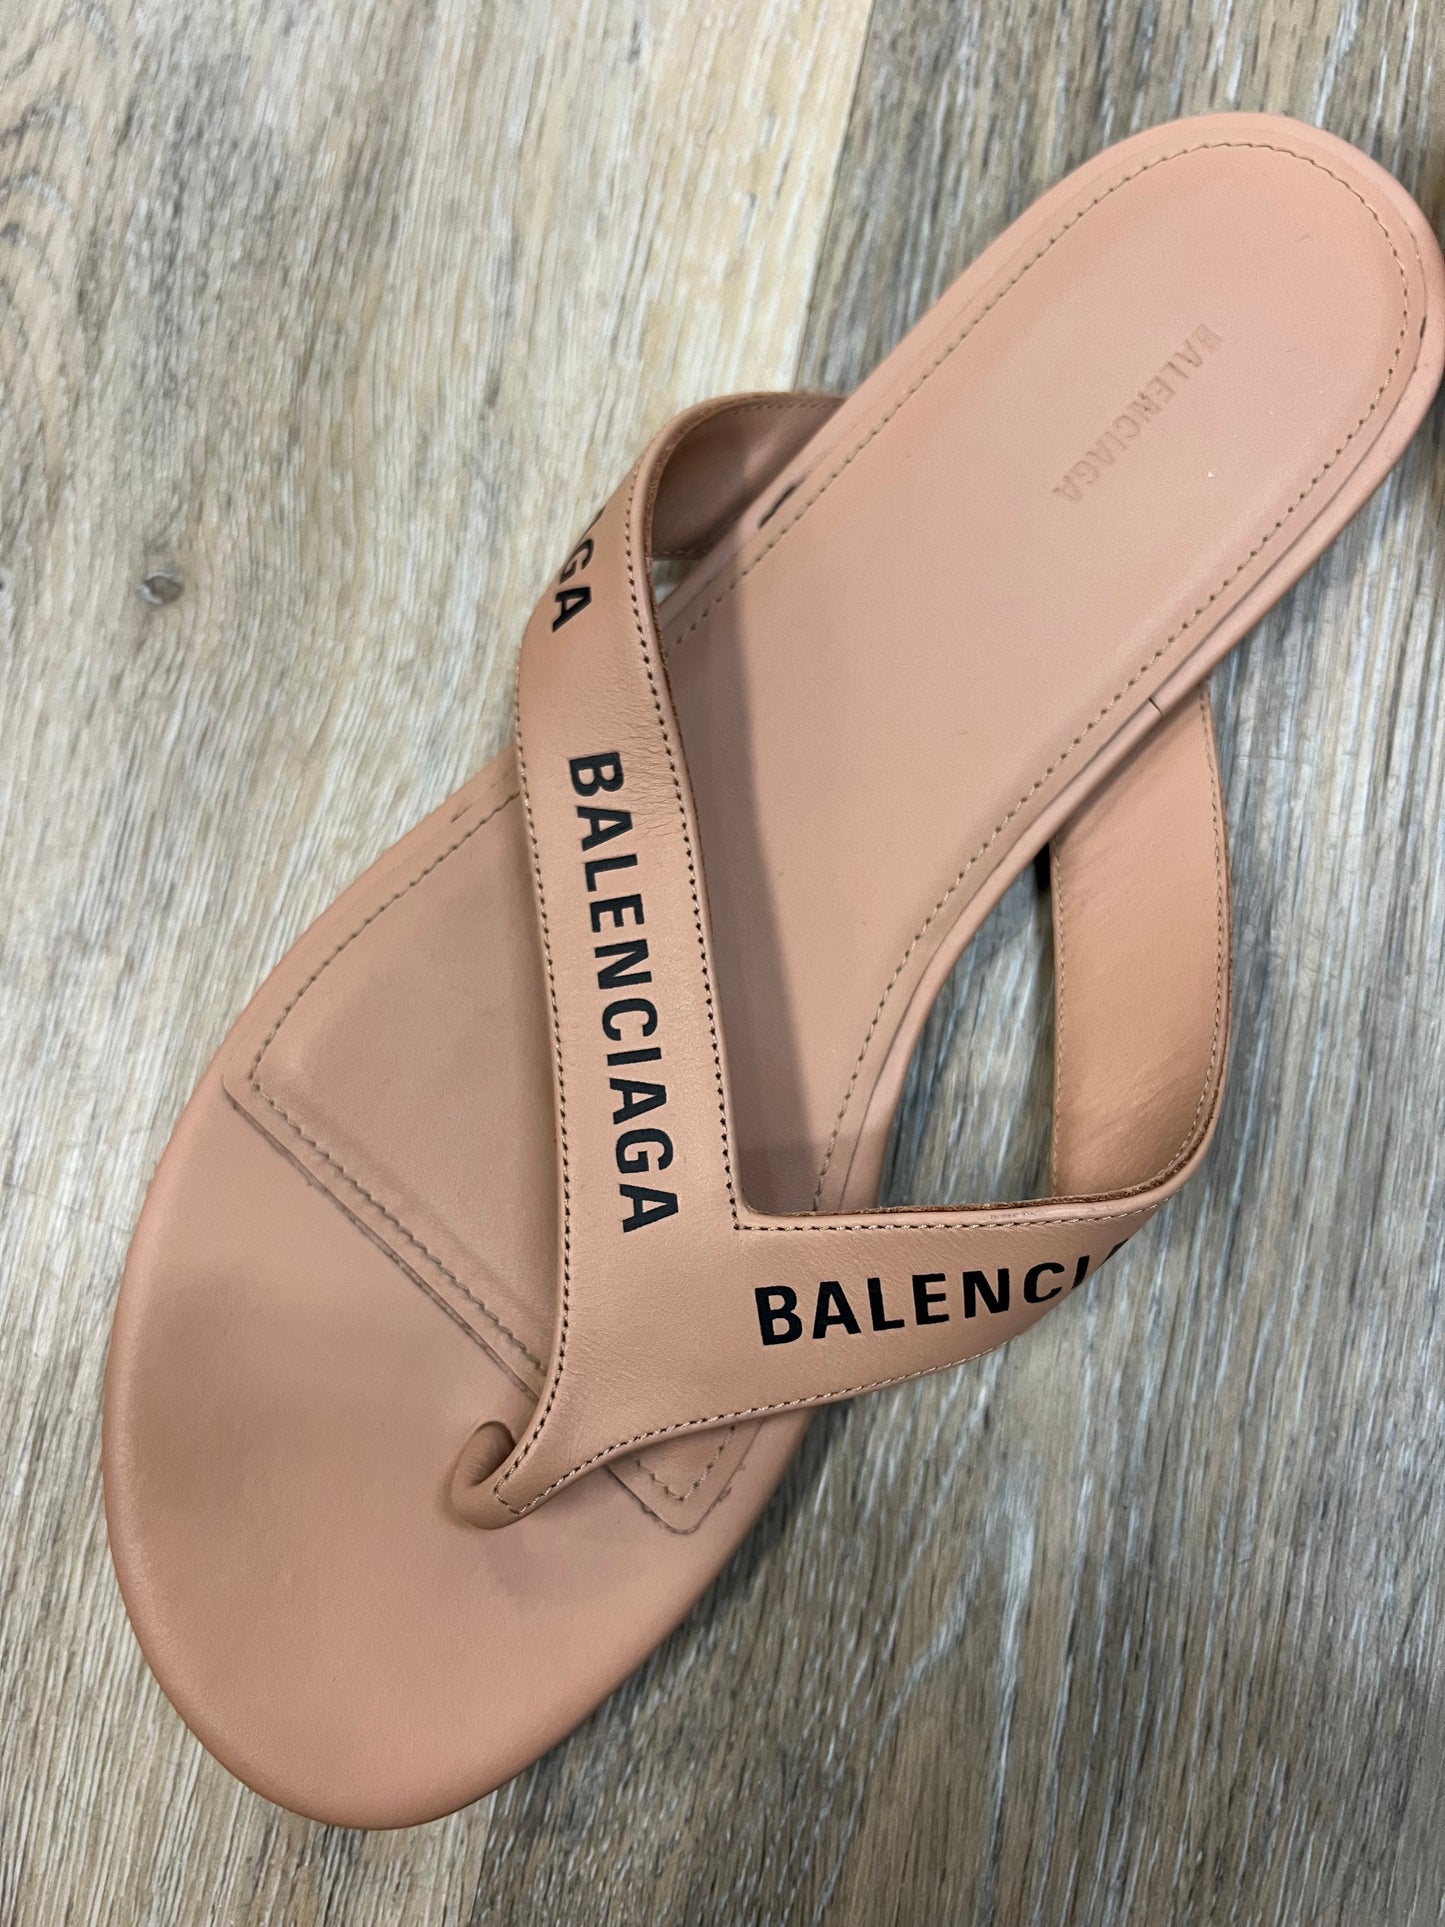 Tan Sandals Designer Balenciaga, Size 7.5/37.5